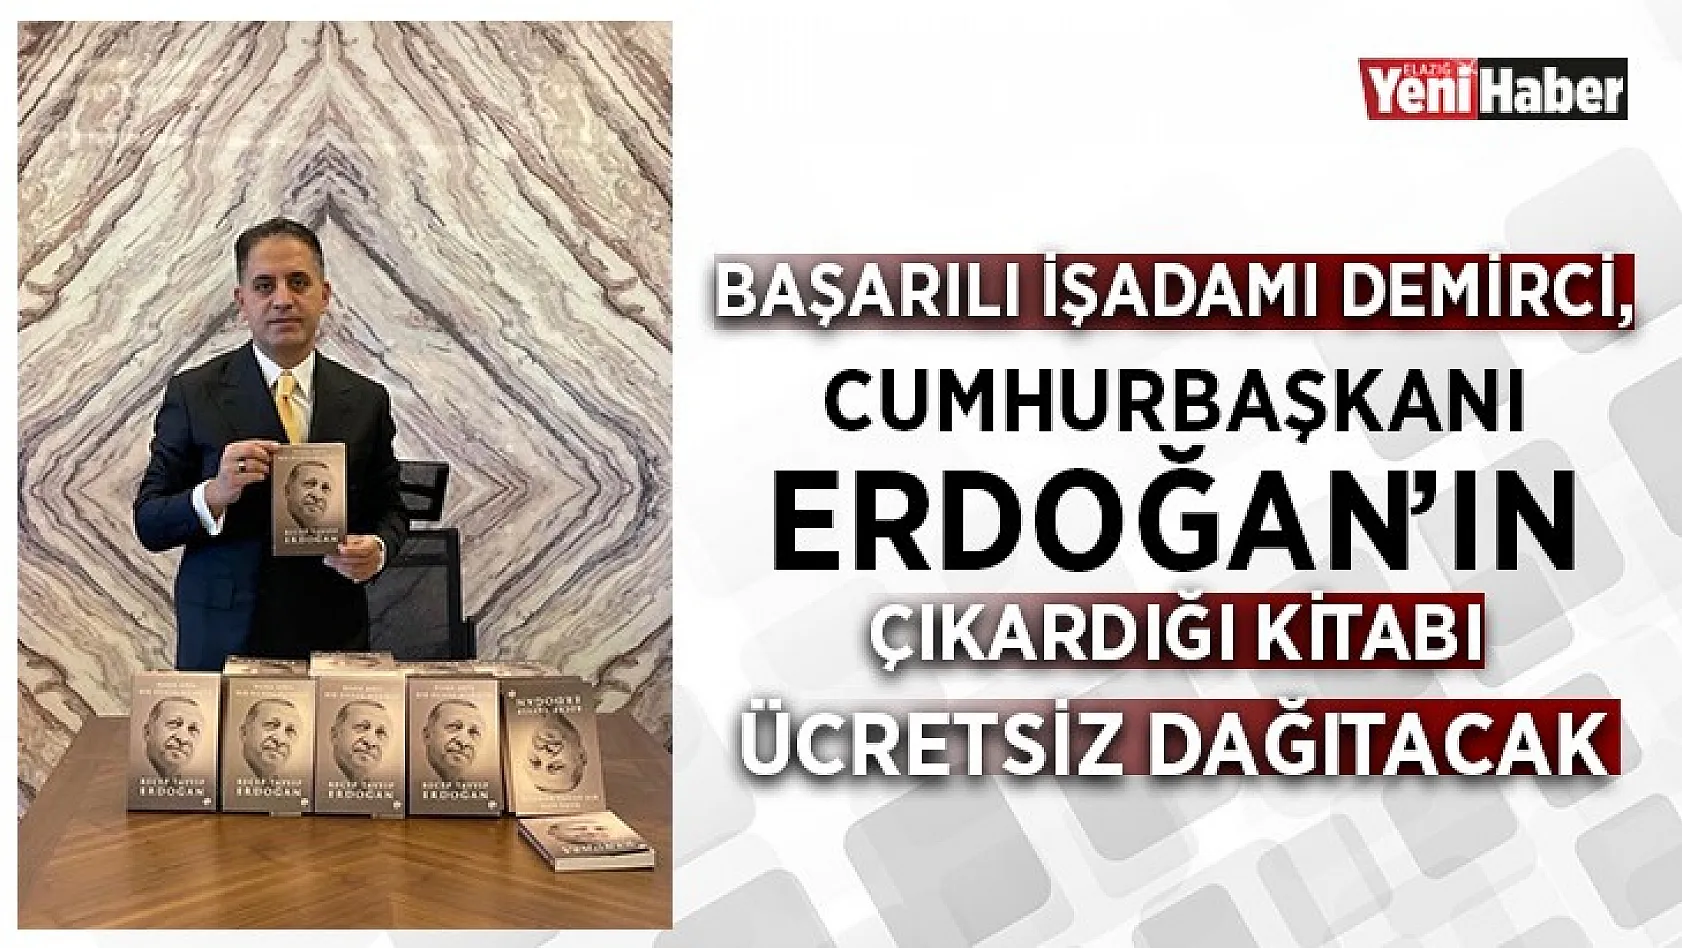 Başarılı İşadamı Demirci, Cumhurbaşkanı Erdoğan'ın Çıkardığı Kitabı Ücretsiz Dağıtacak